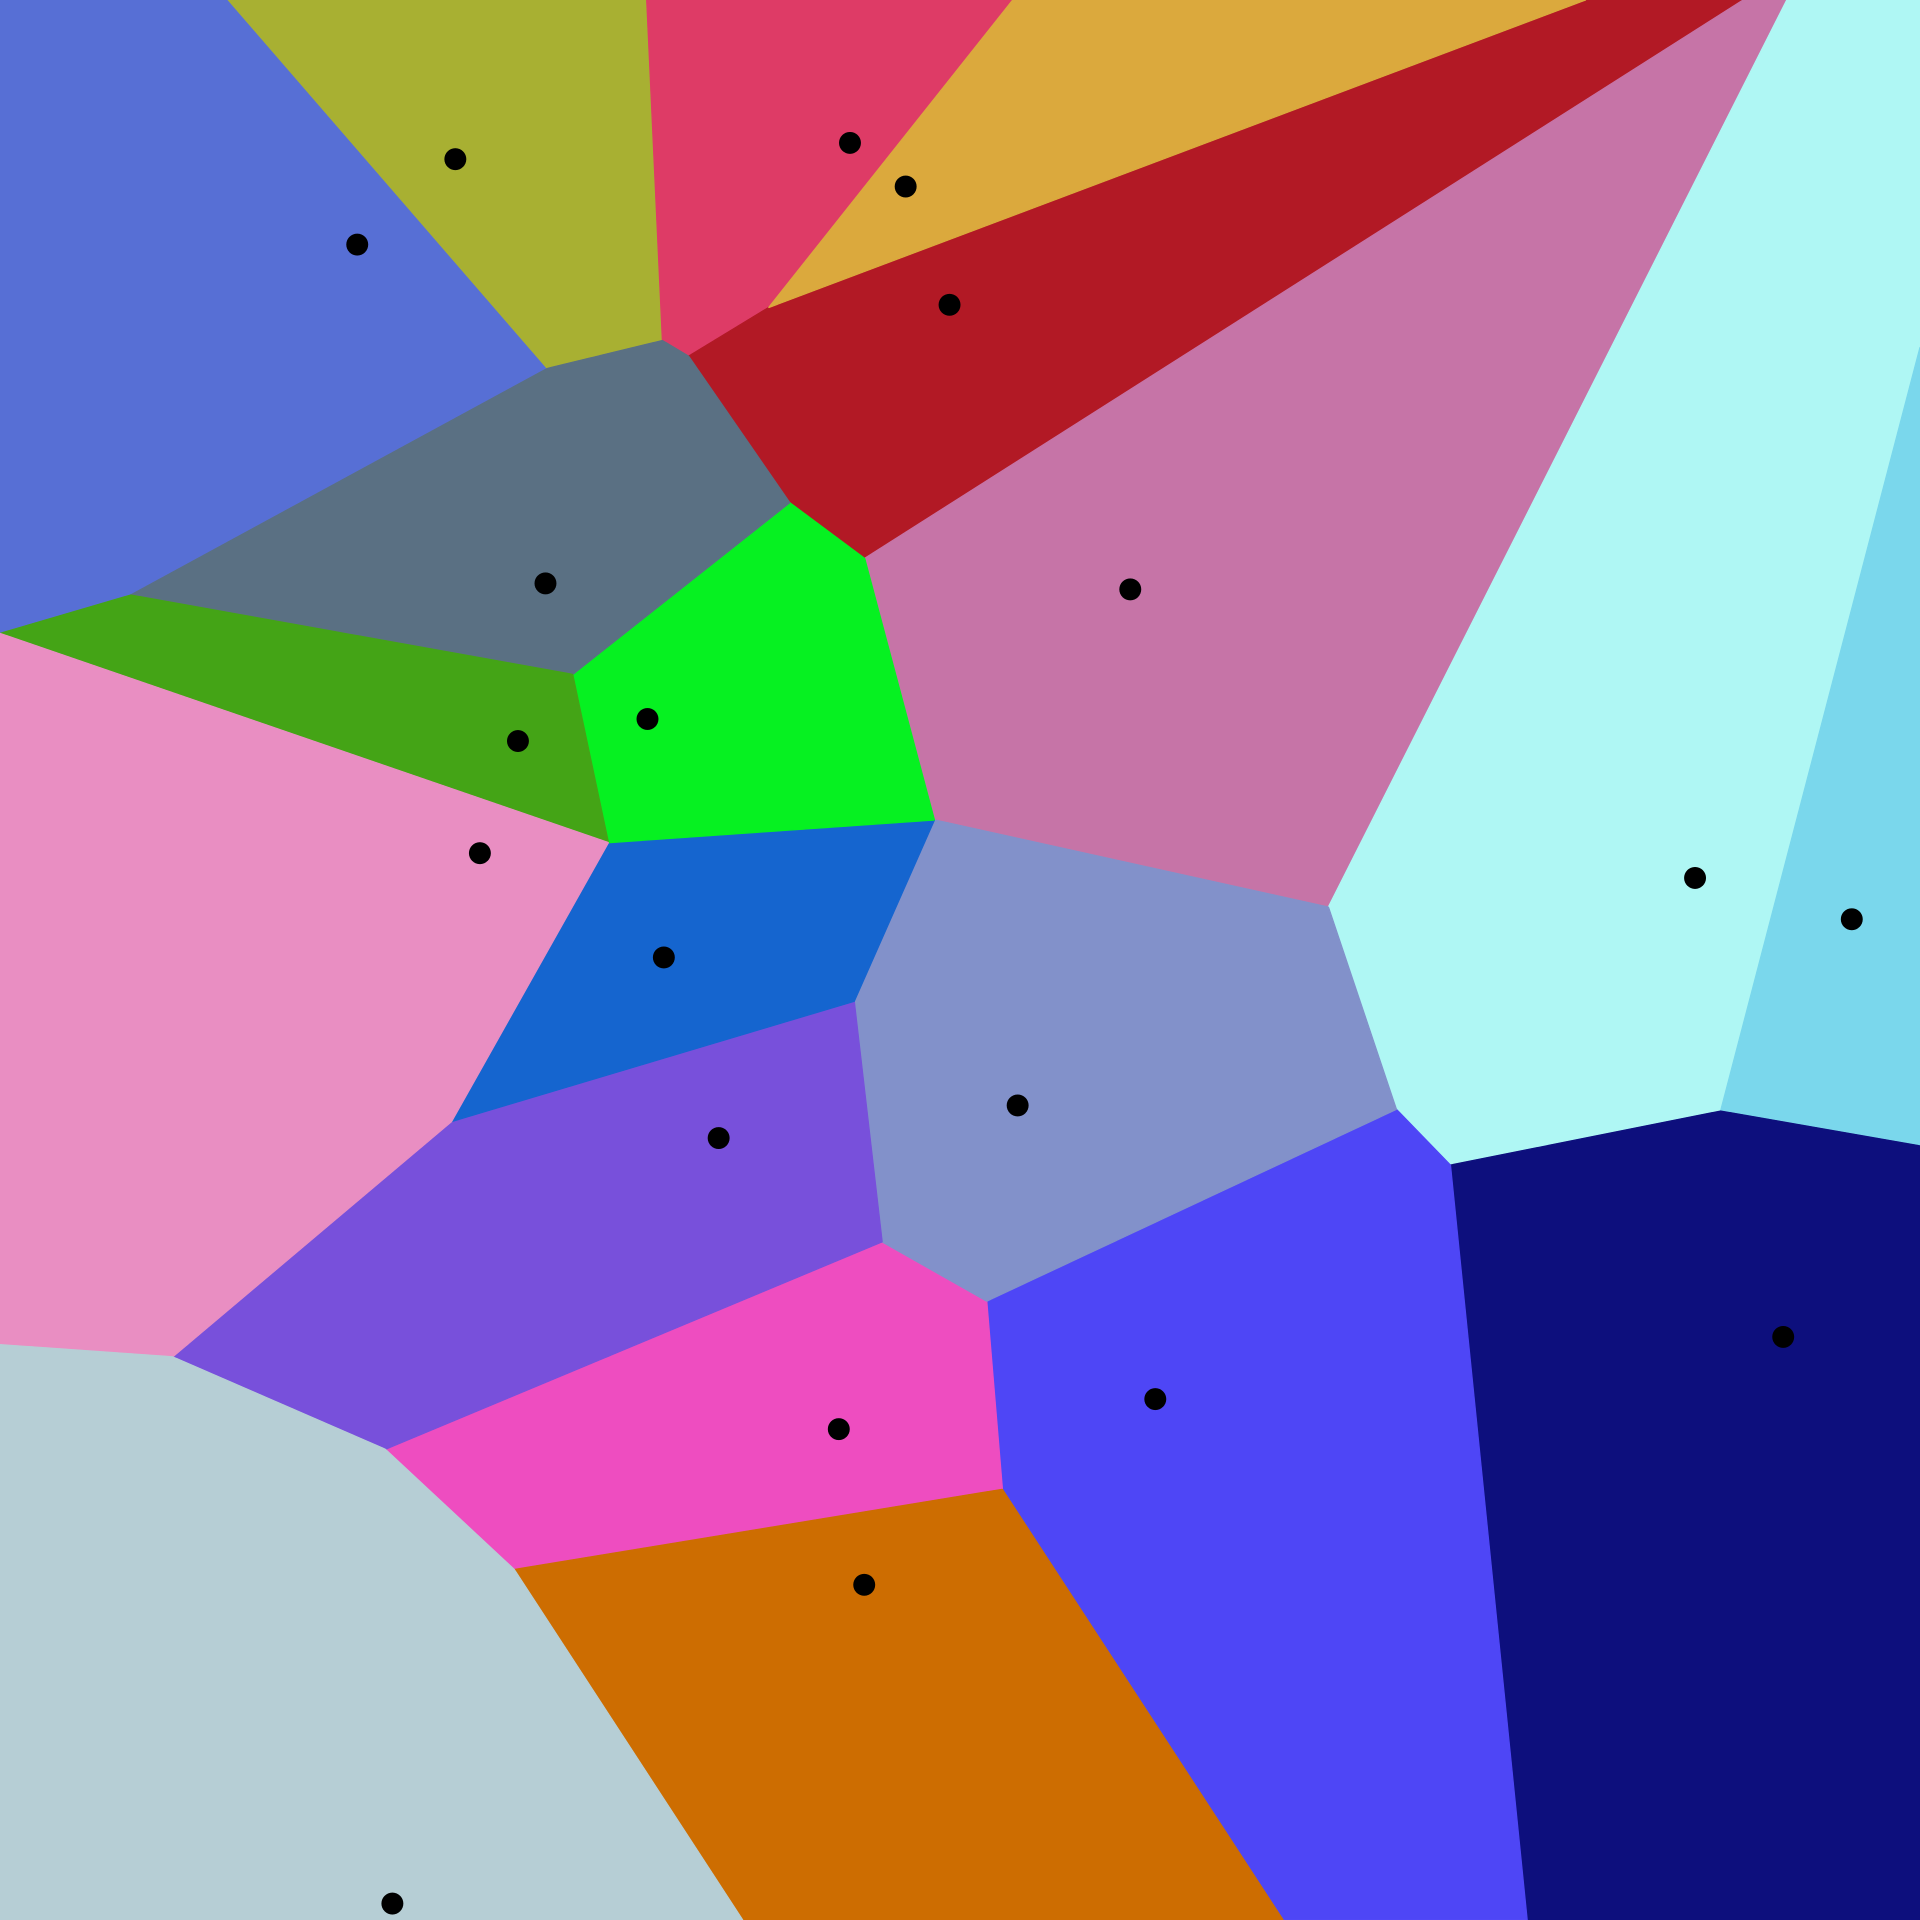 A two-dimensional Voronoi diagram. Image by Balu Ertl, CC BY-SA 4.0.